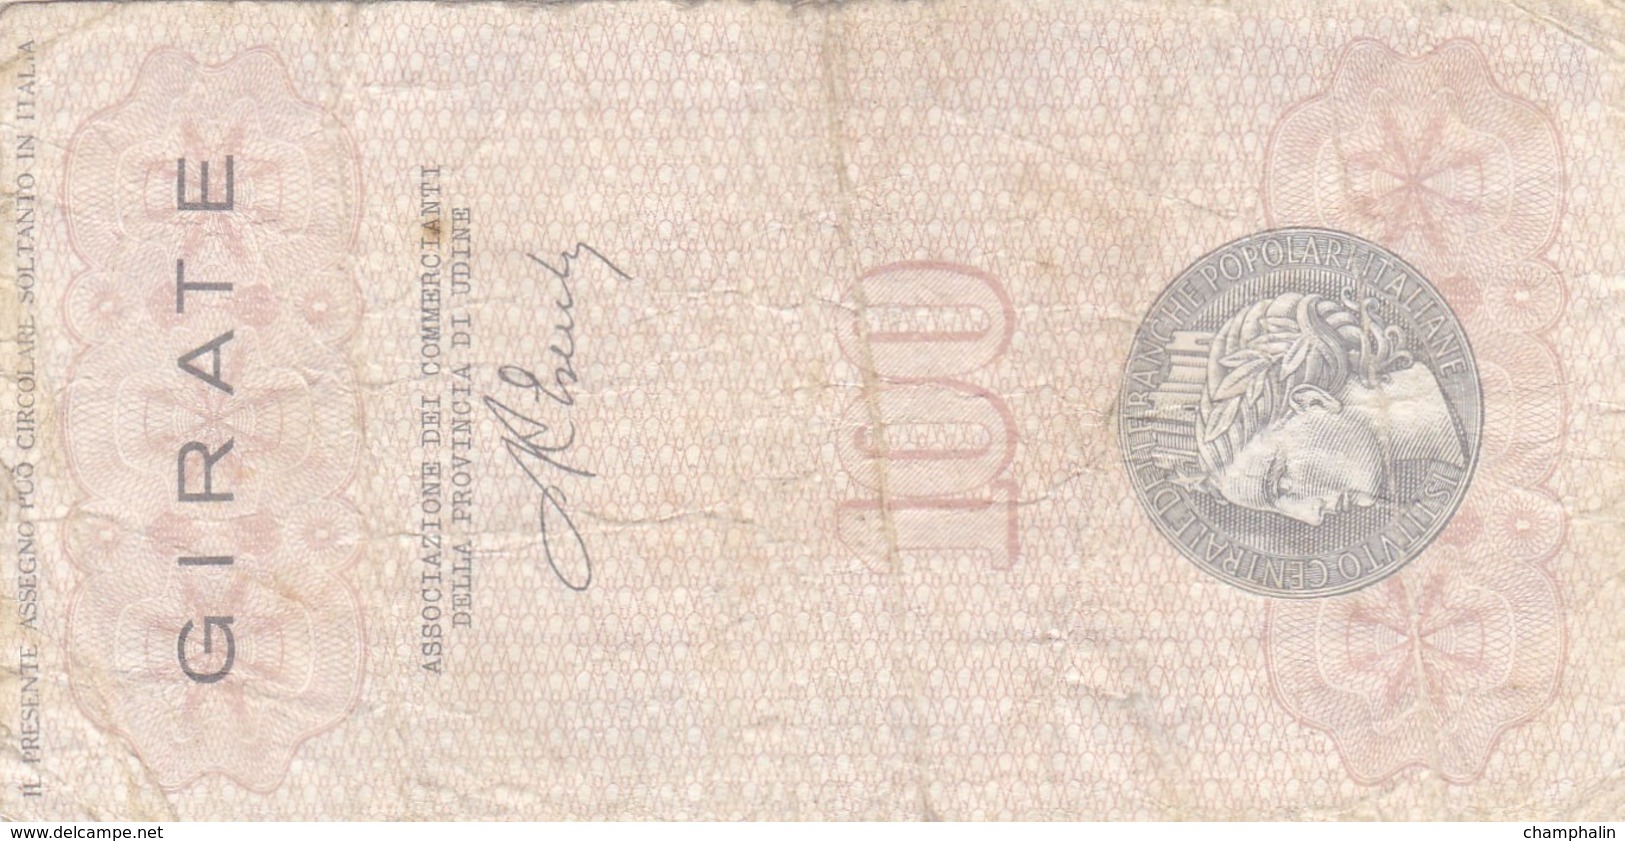 Italie - Billet De 100 Lire - Istituto Centrale Delle Banche Popolari - 13/12/1976 - Emissions Provisionnelles- Cividale - [ 4] Emissions Provisionelles